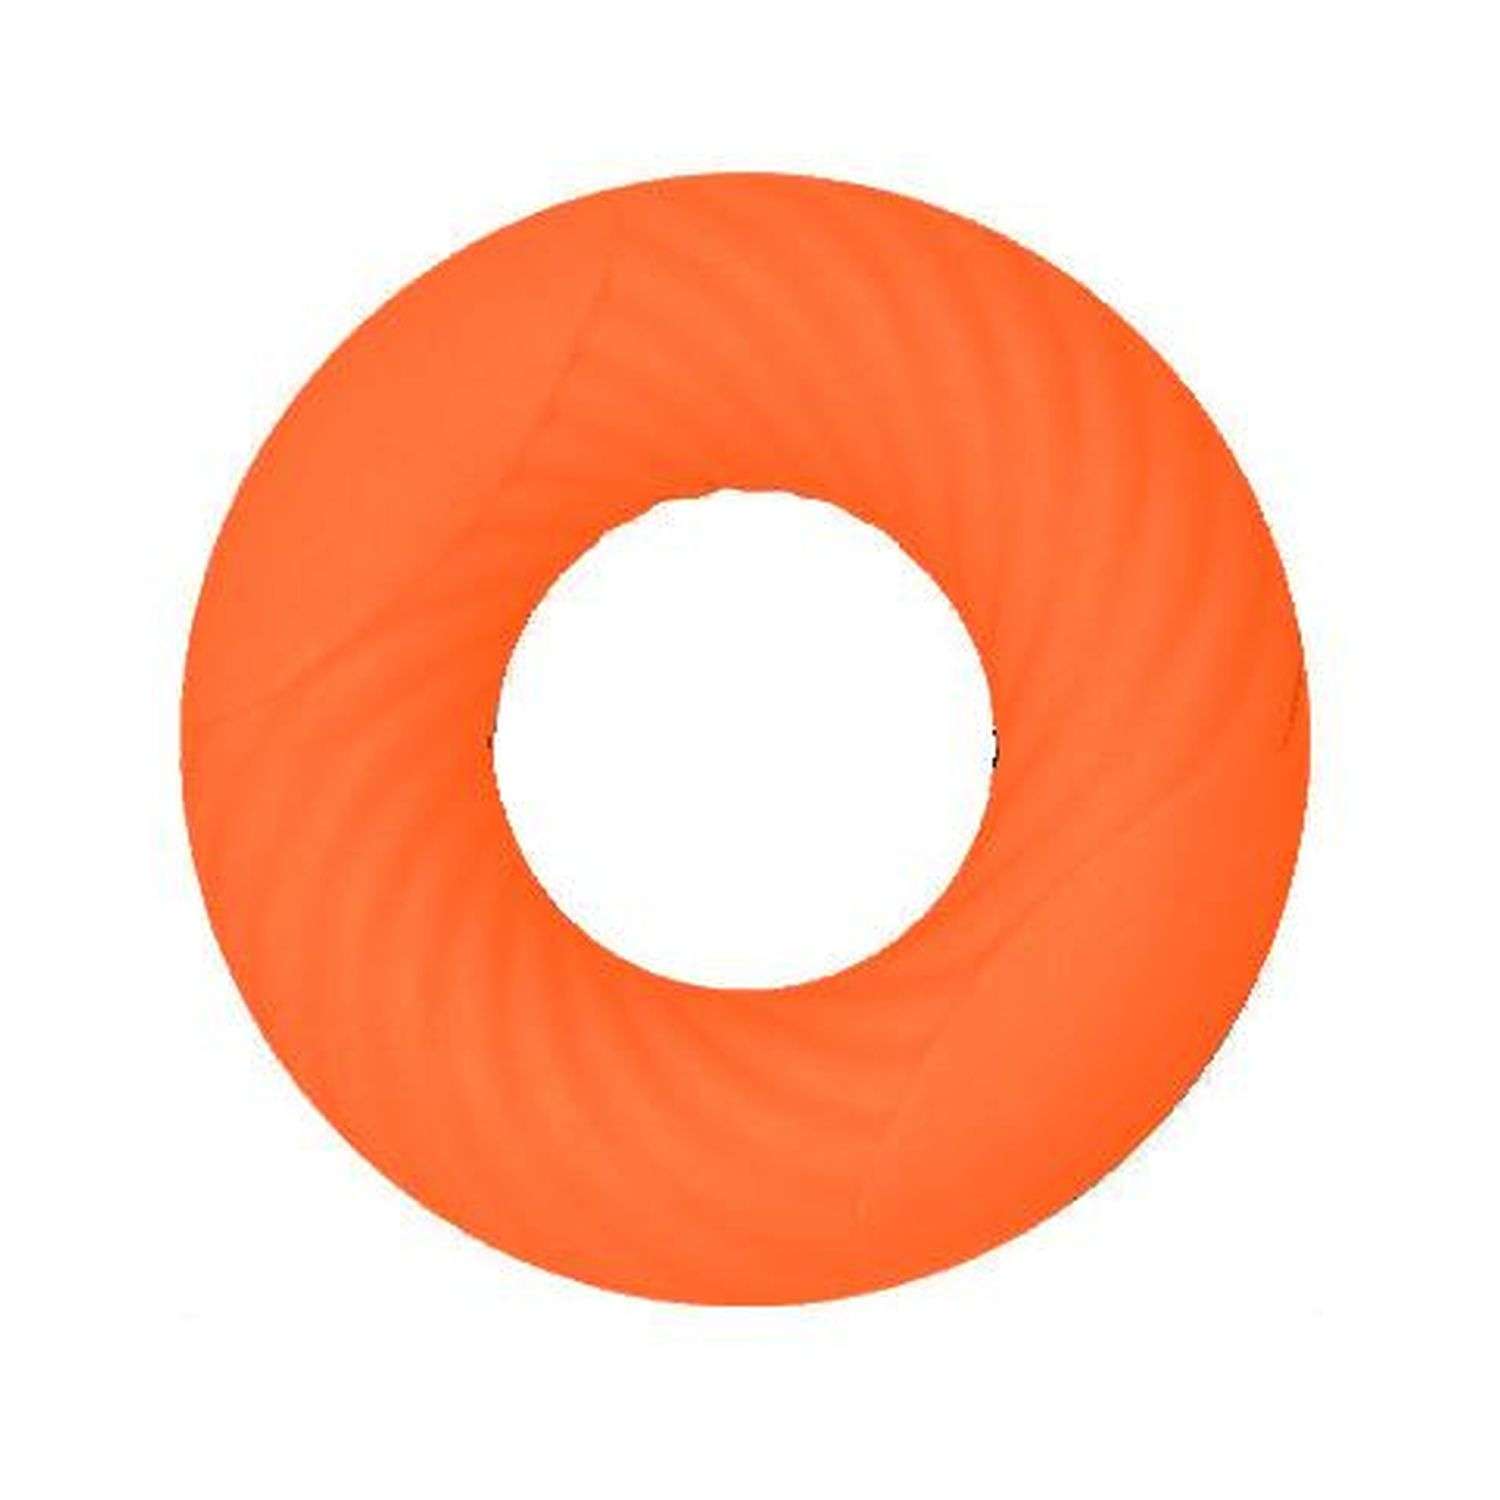 Силиконовый эспандер Rabizy кистевой оранжевый 18кг - фото 1